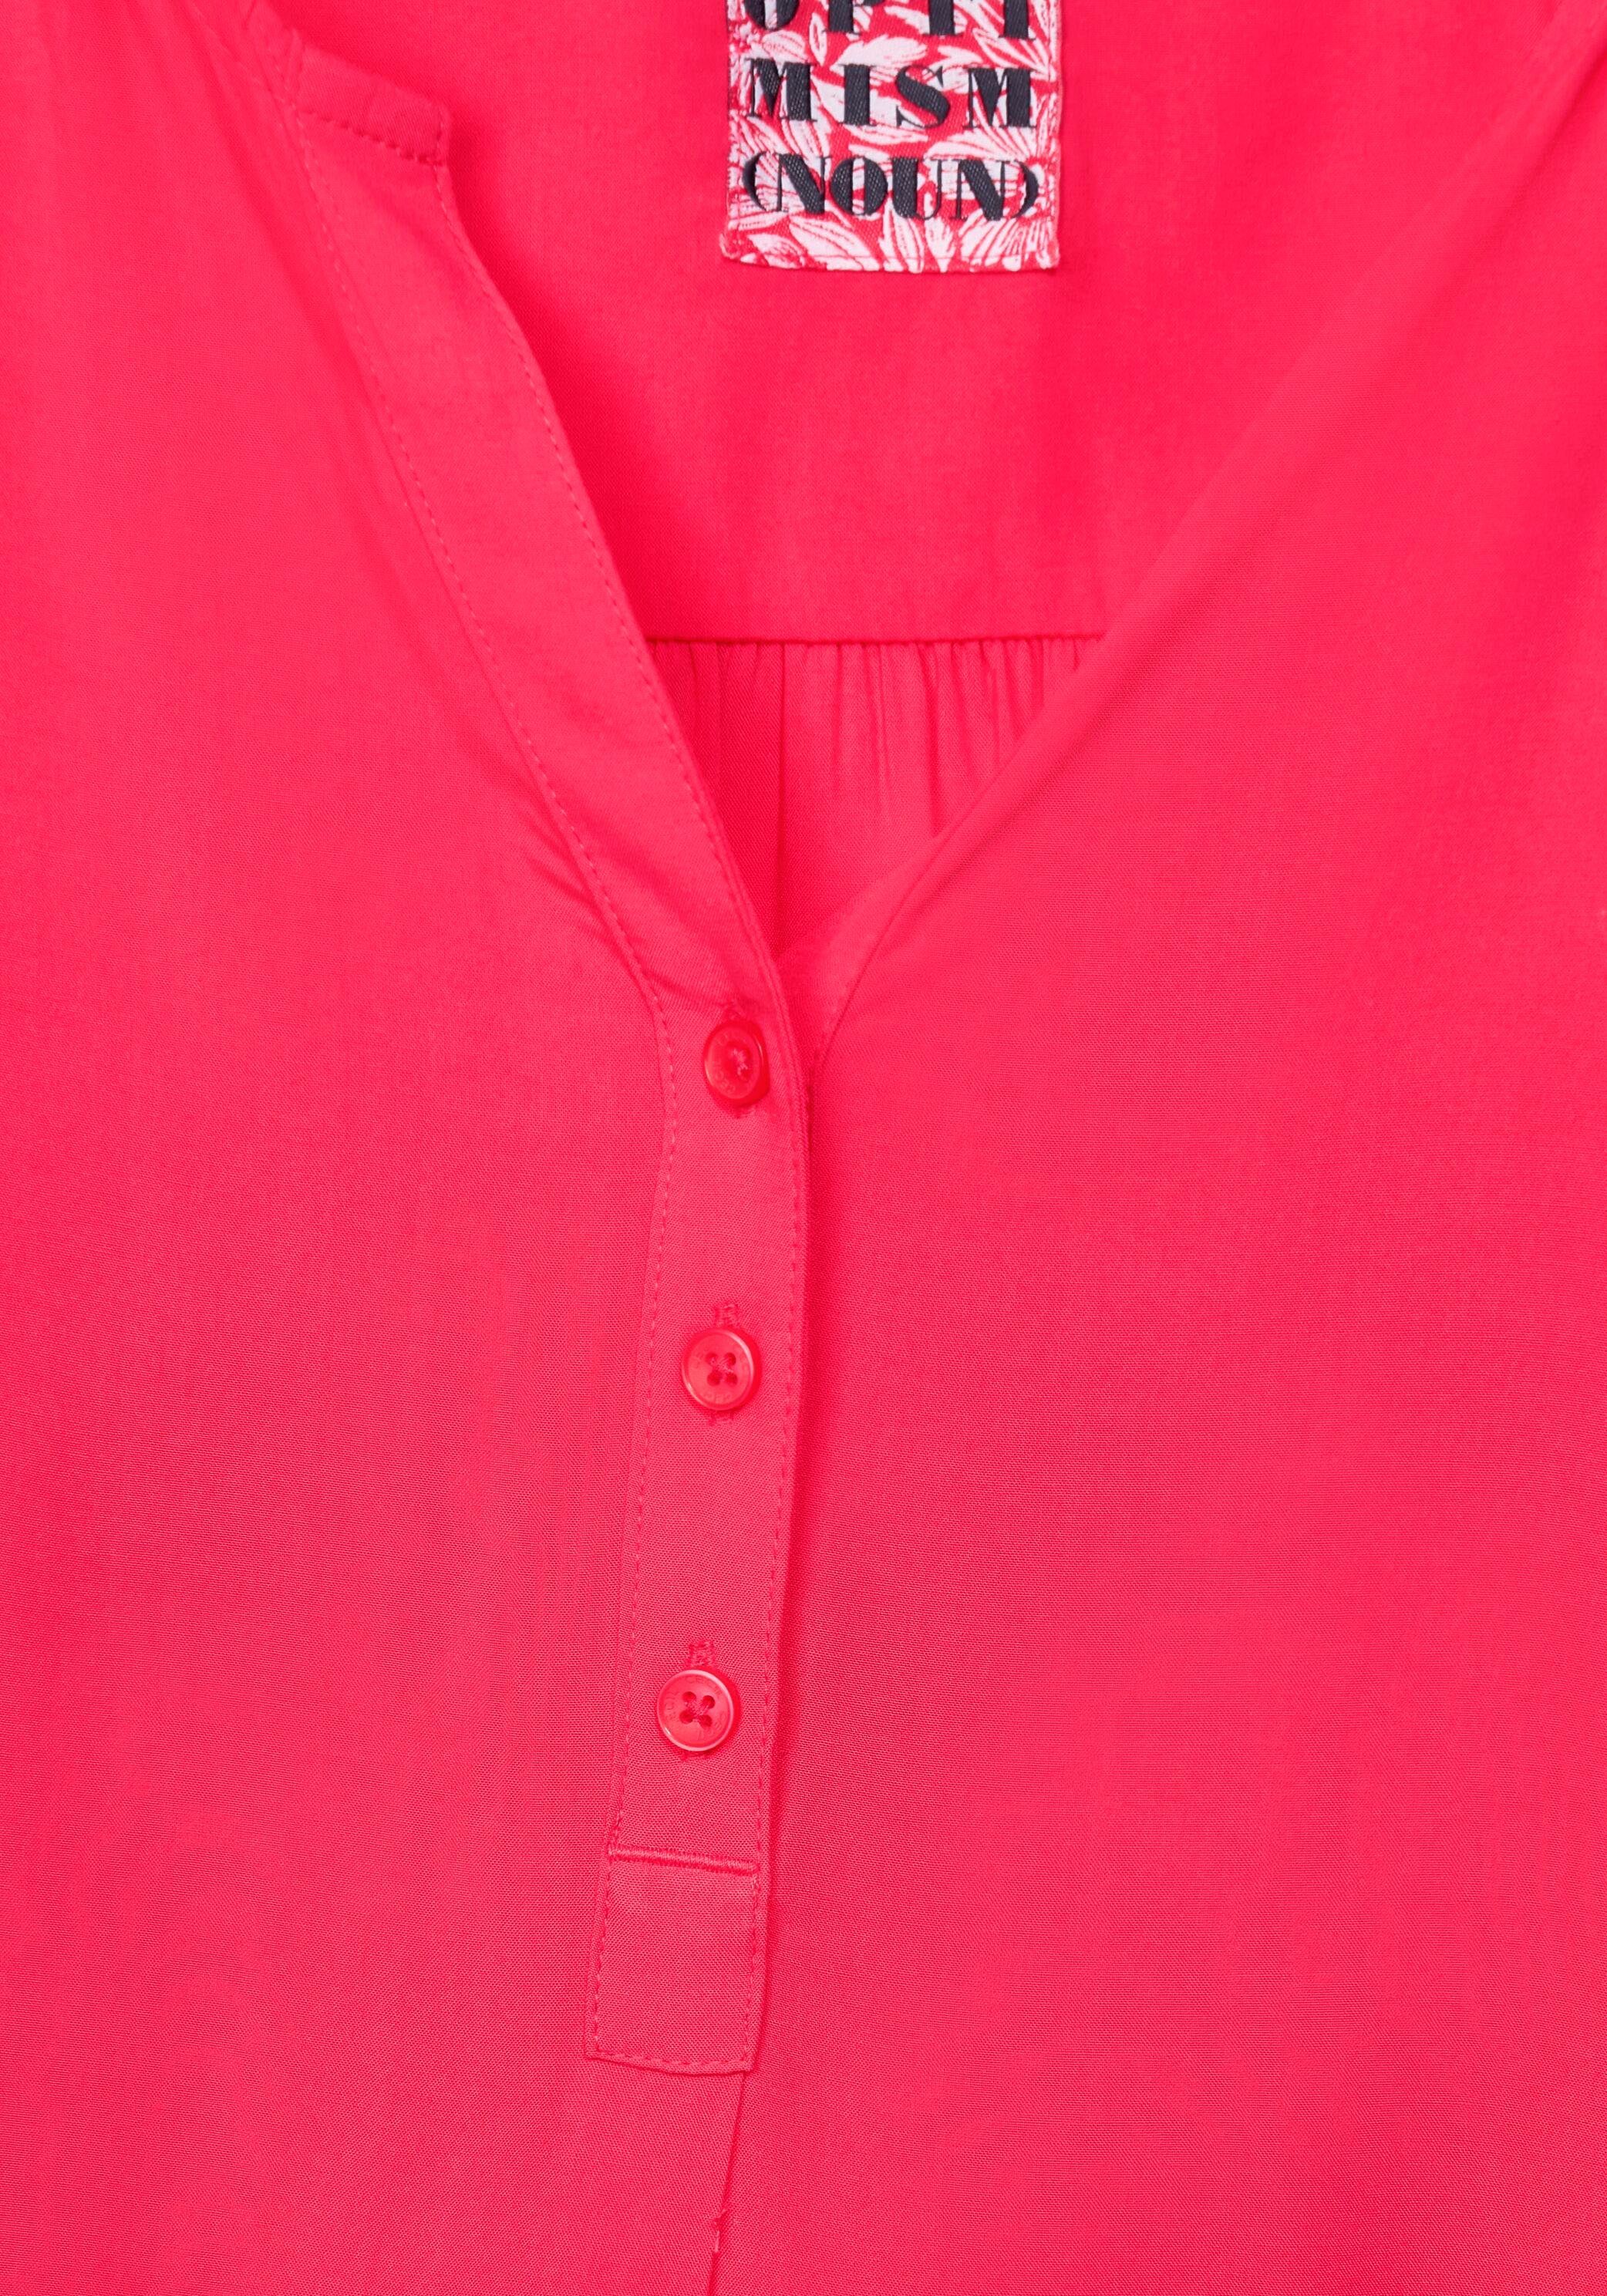 Serafinoausschnitt Shirtbluse Cecil mit pink